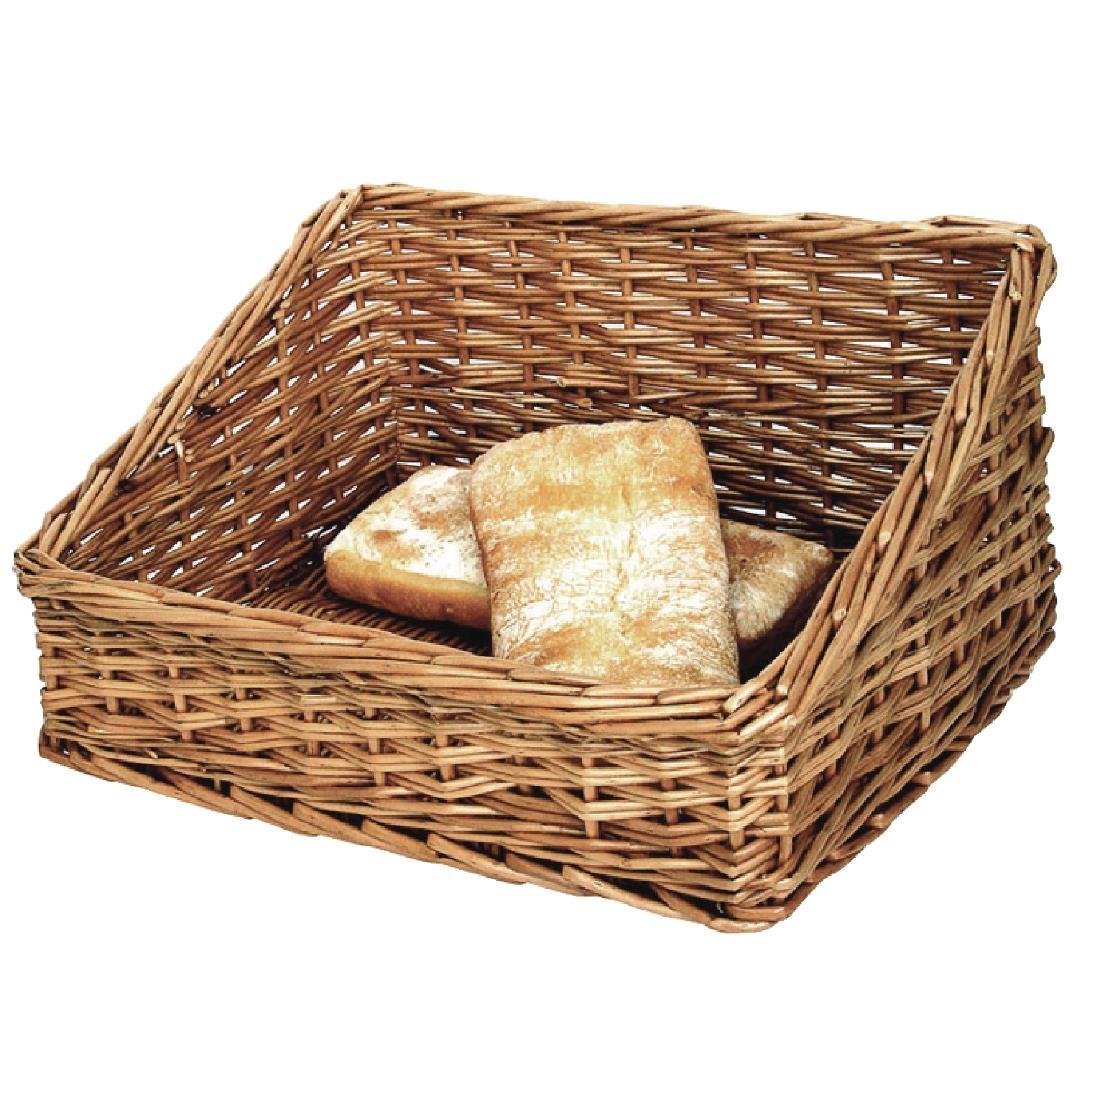 Bread Display Basket 510mm - P756  - 1